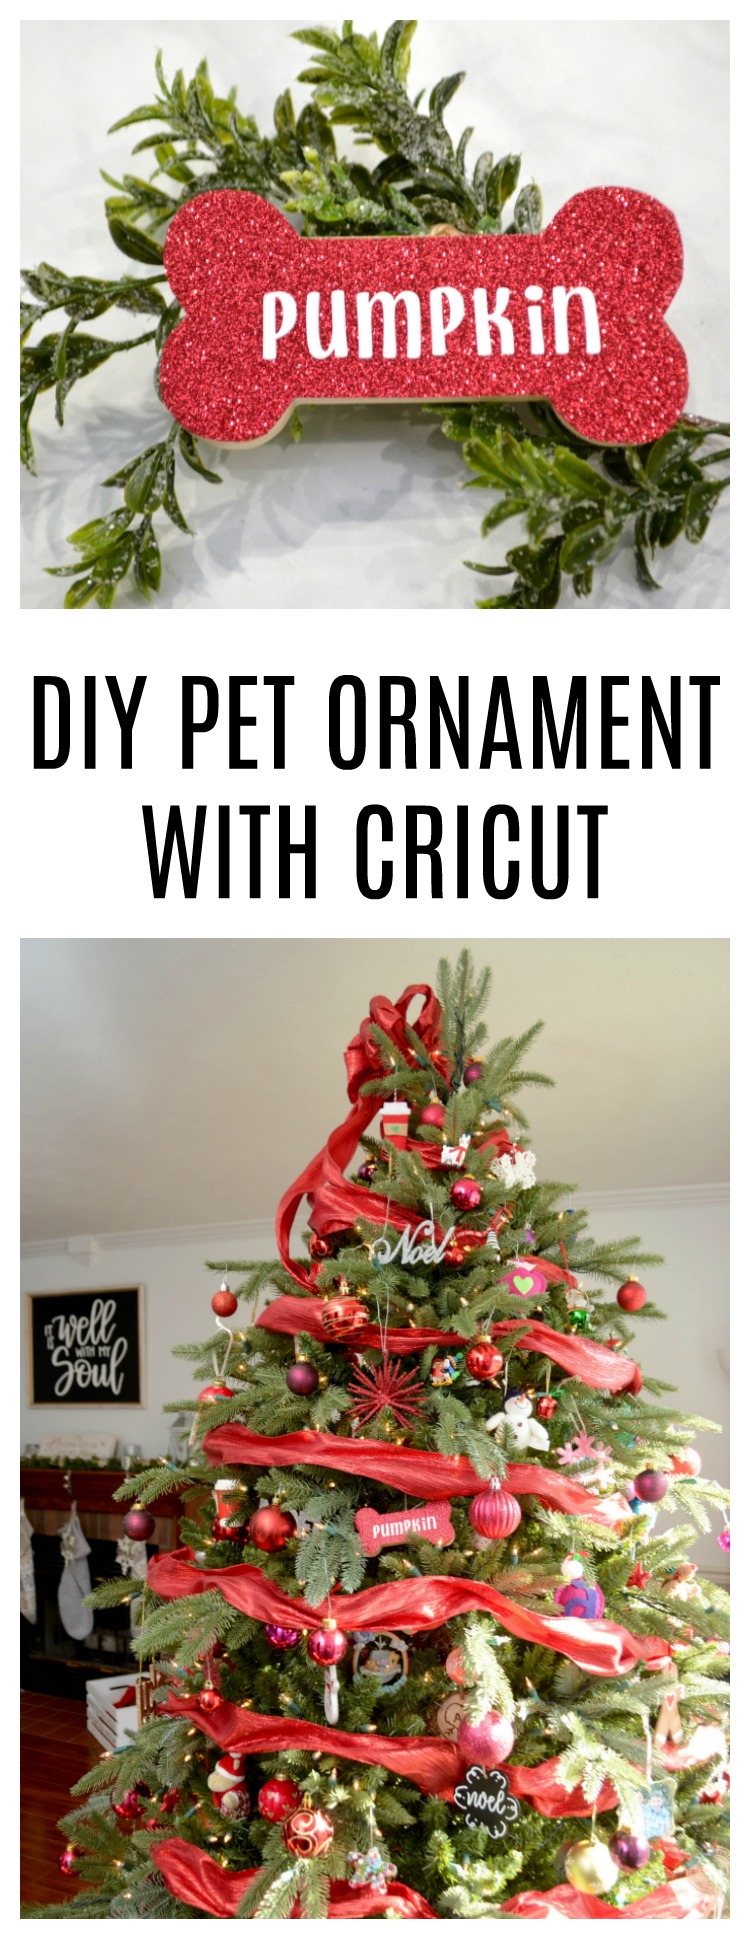 DIY Pet Ornament